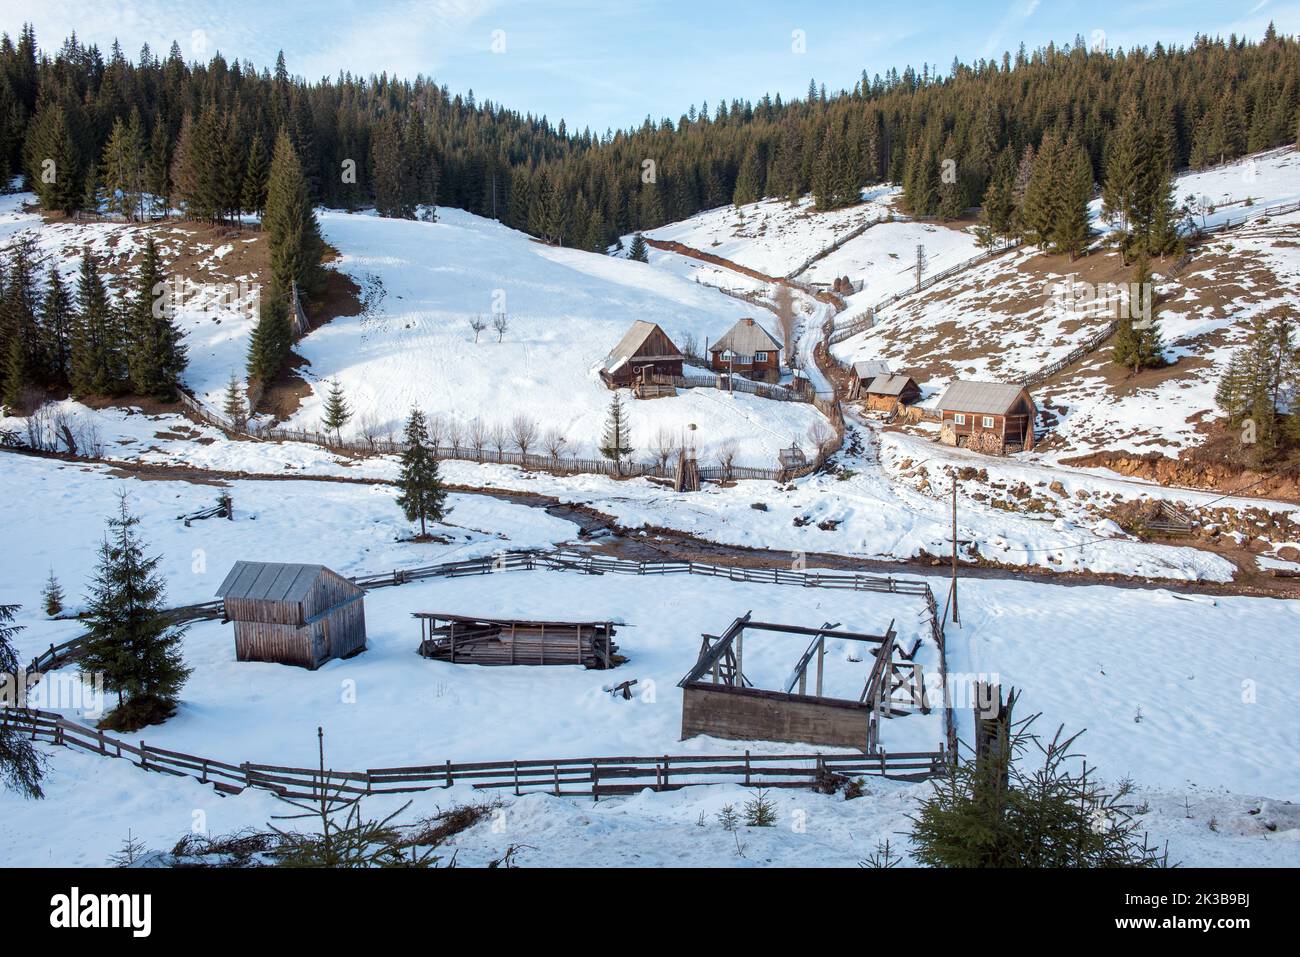 Winter rural countryside scene in Transylvania, Romania Stock Photo